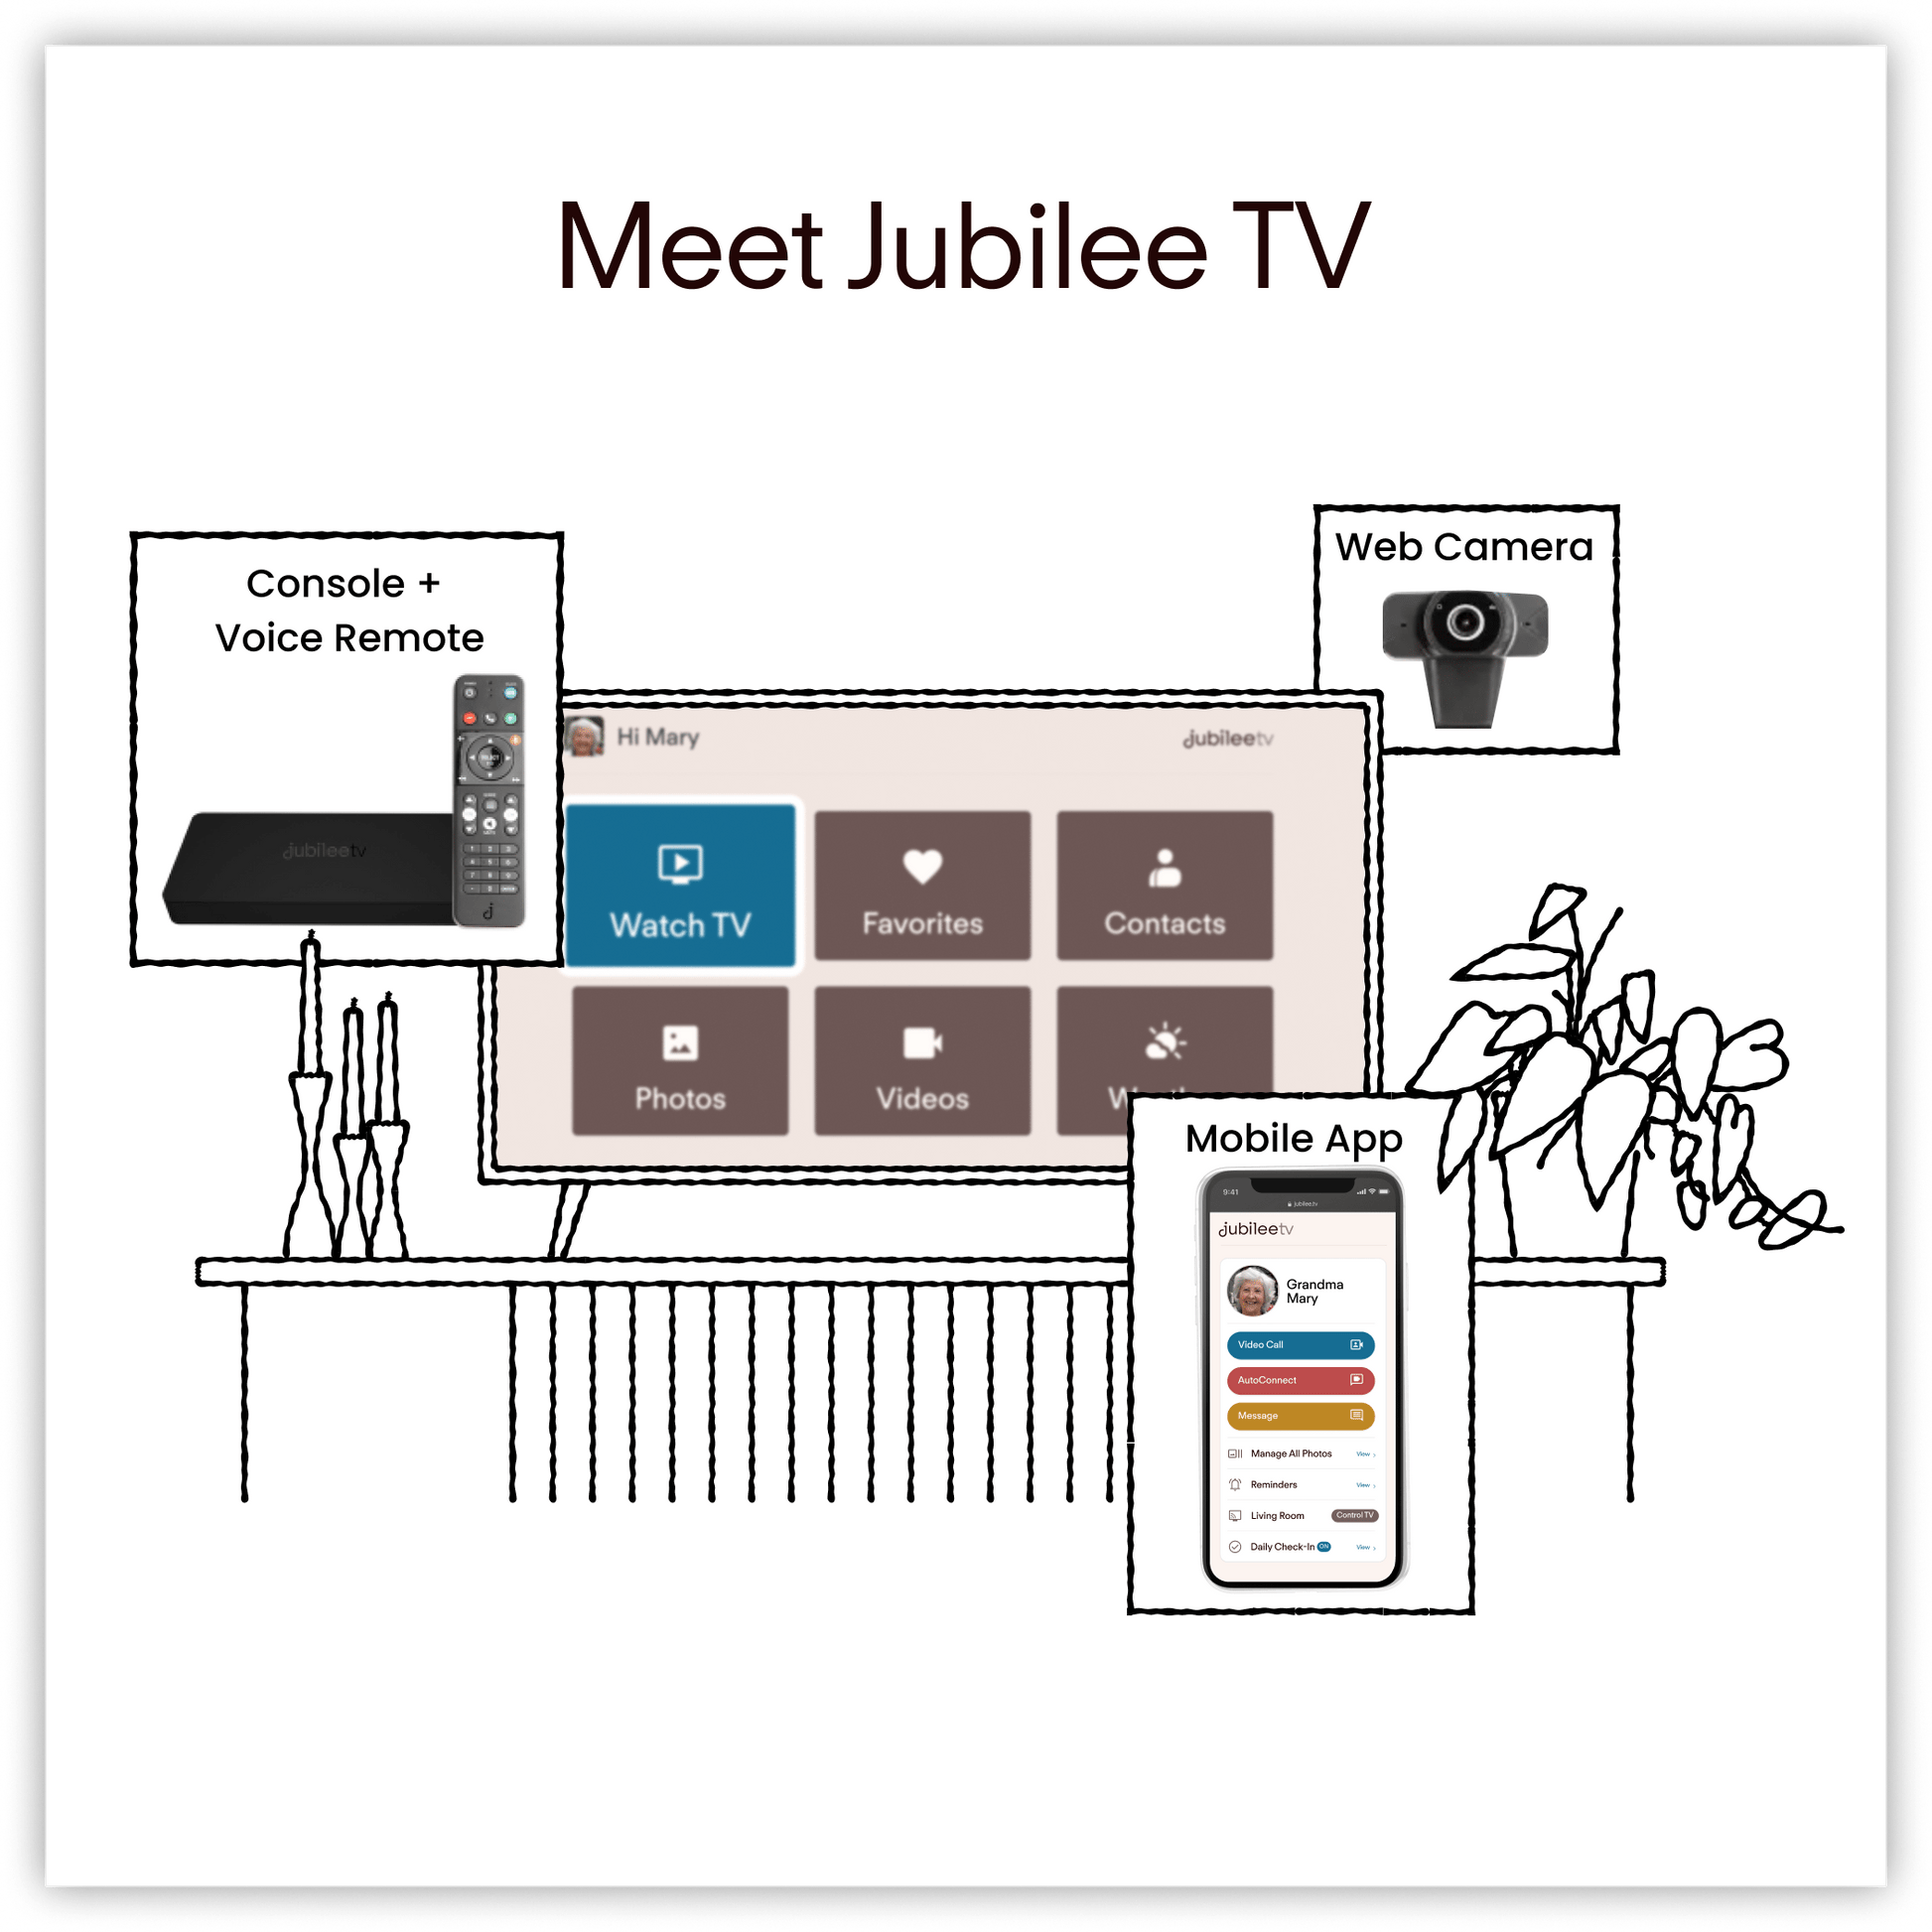 Jubilee TV